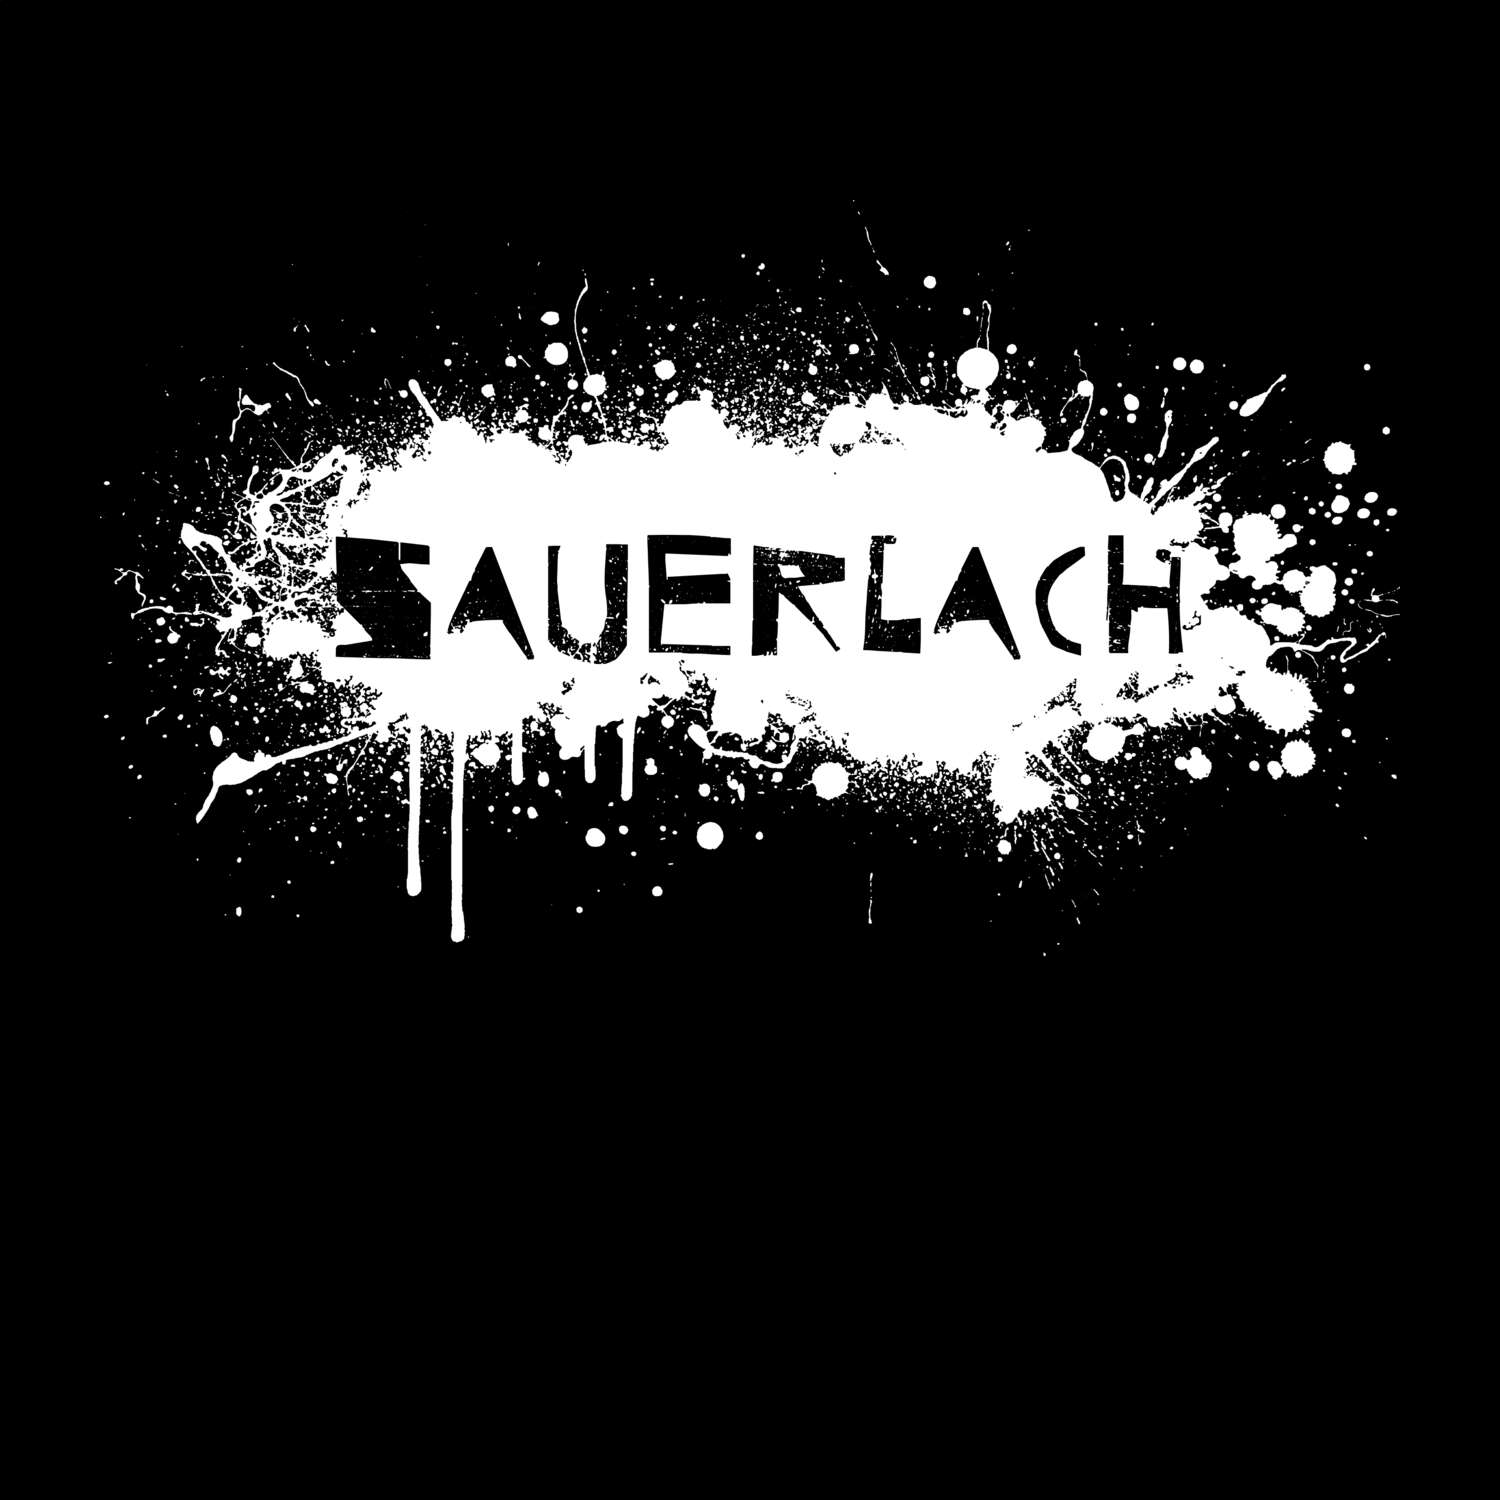 Sauerlach T-Shirt »Paint Splash Punk«